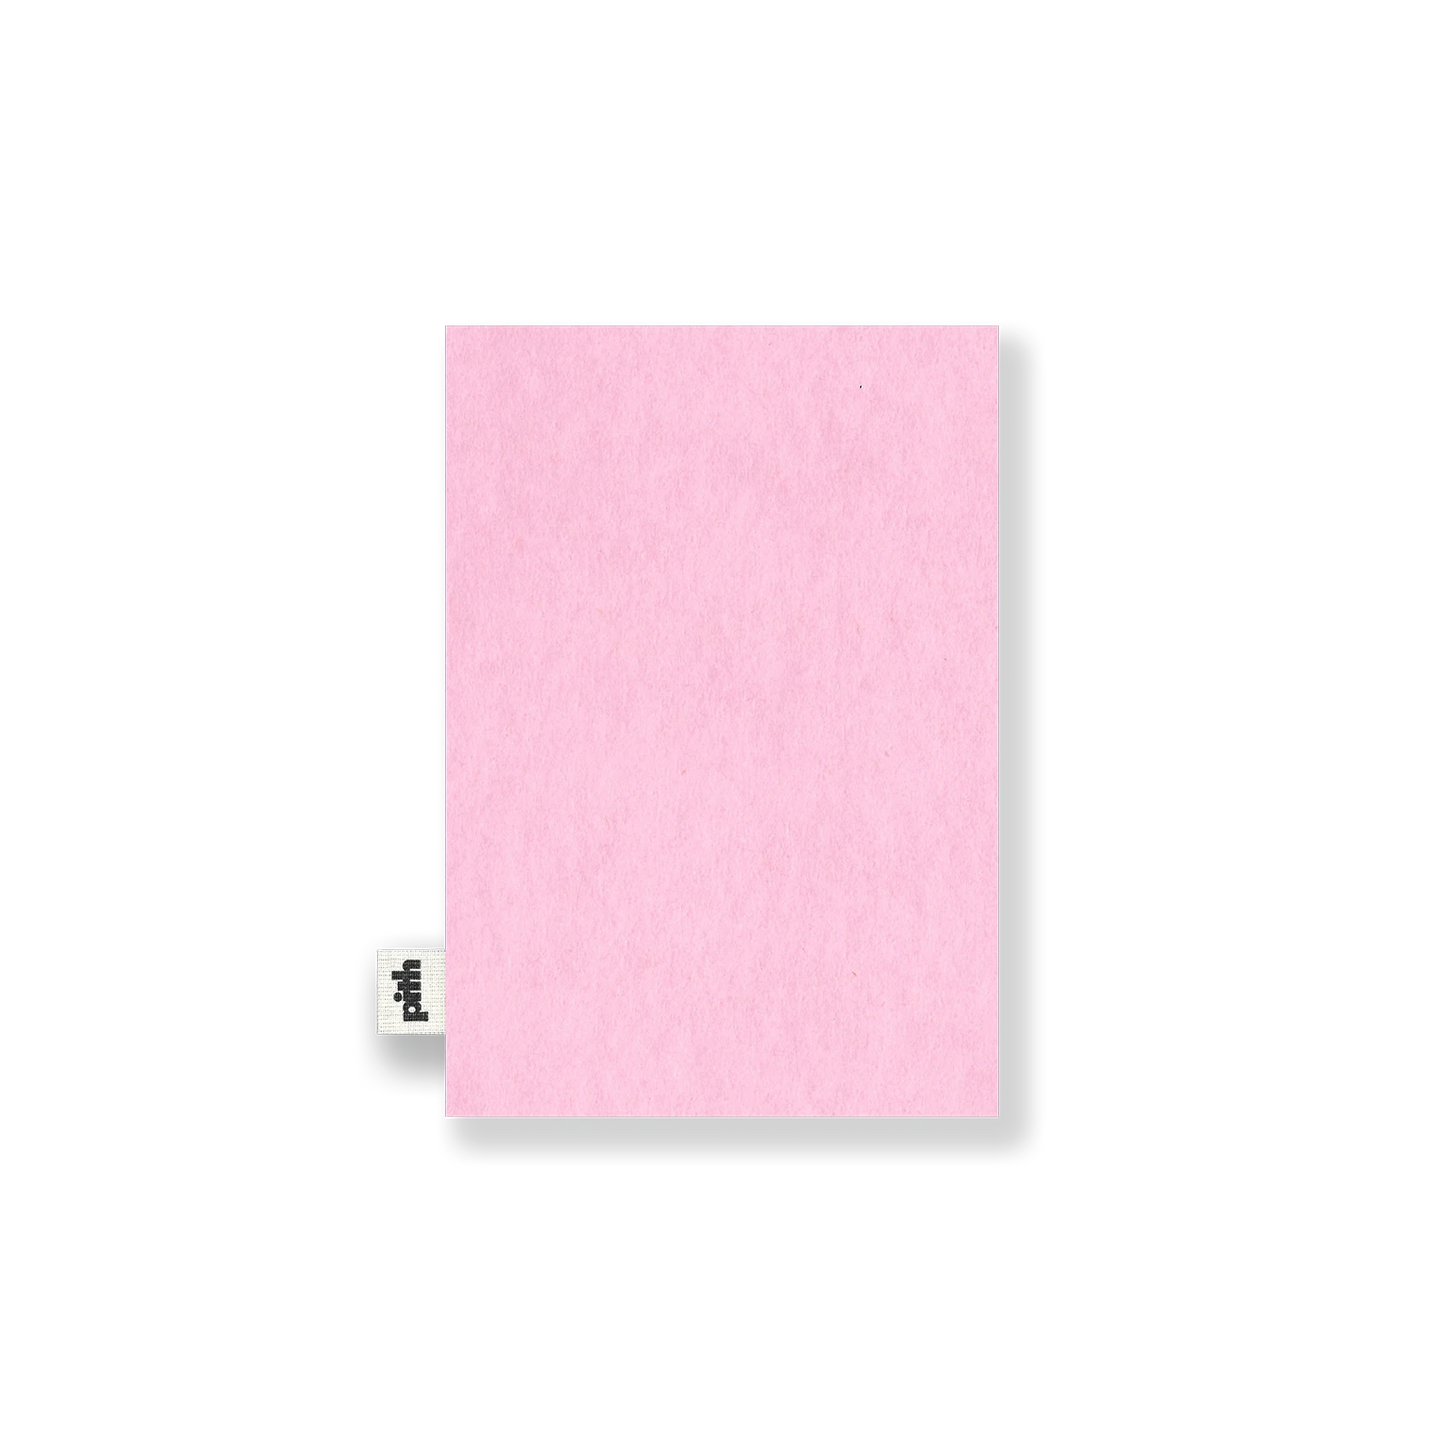 Pith - Kabosu Schetsboek Roze